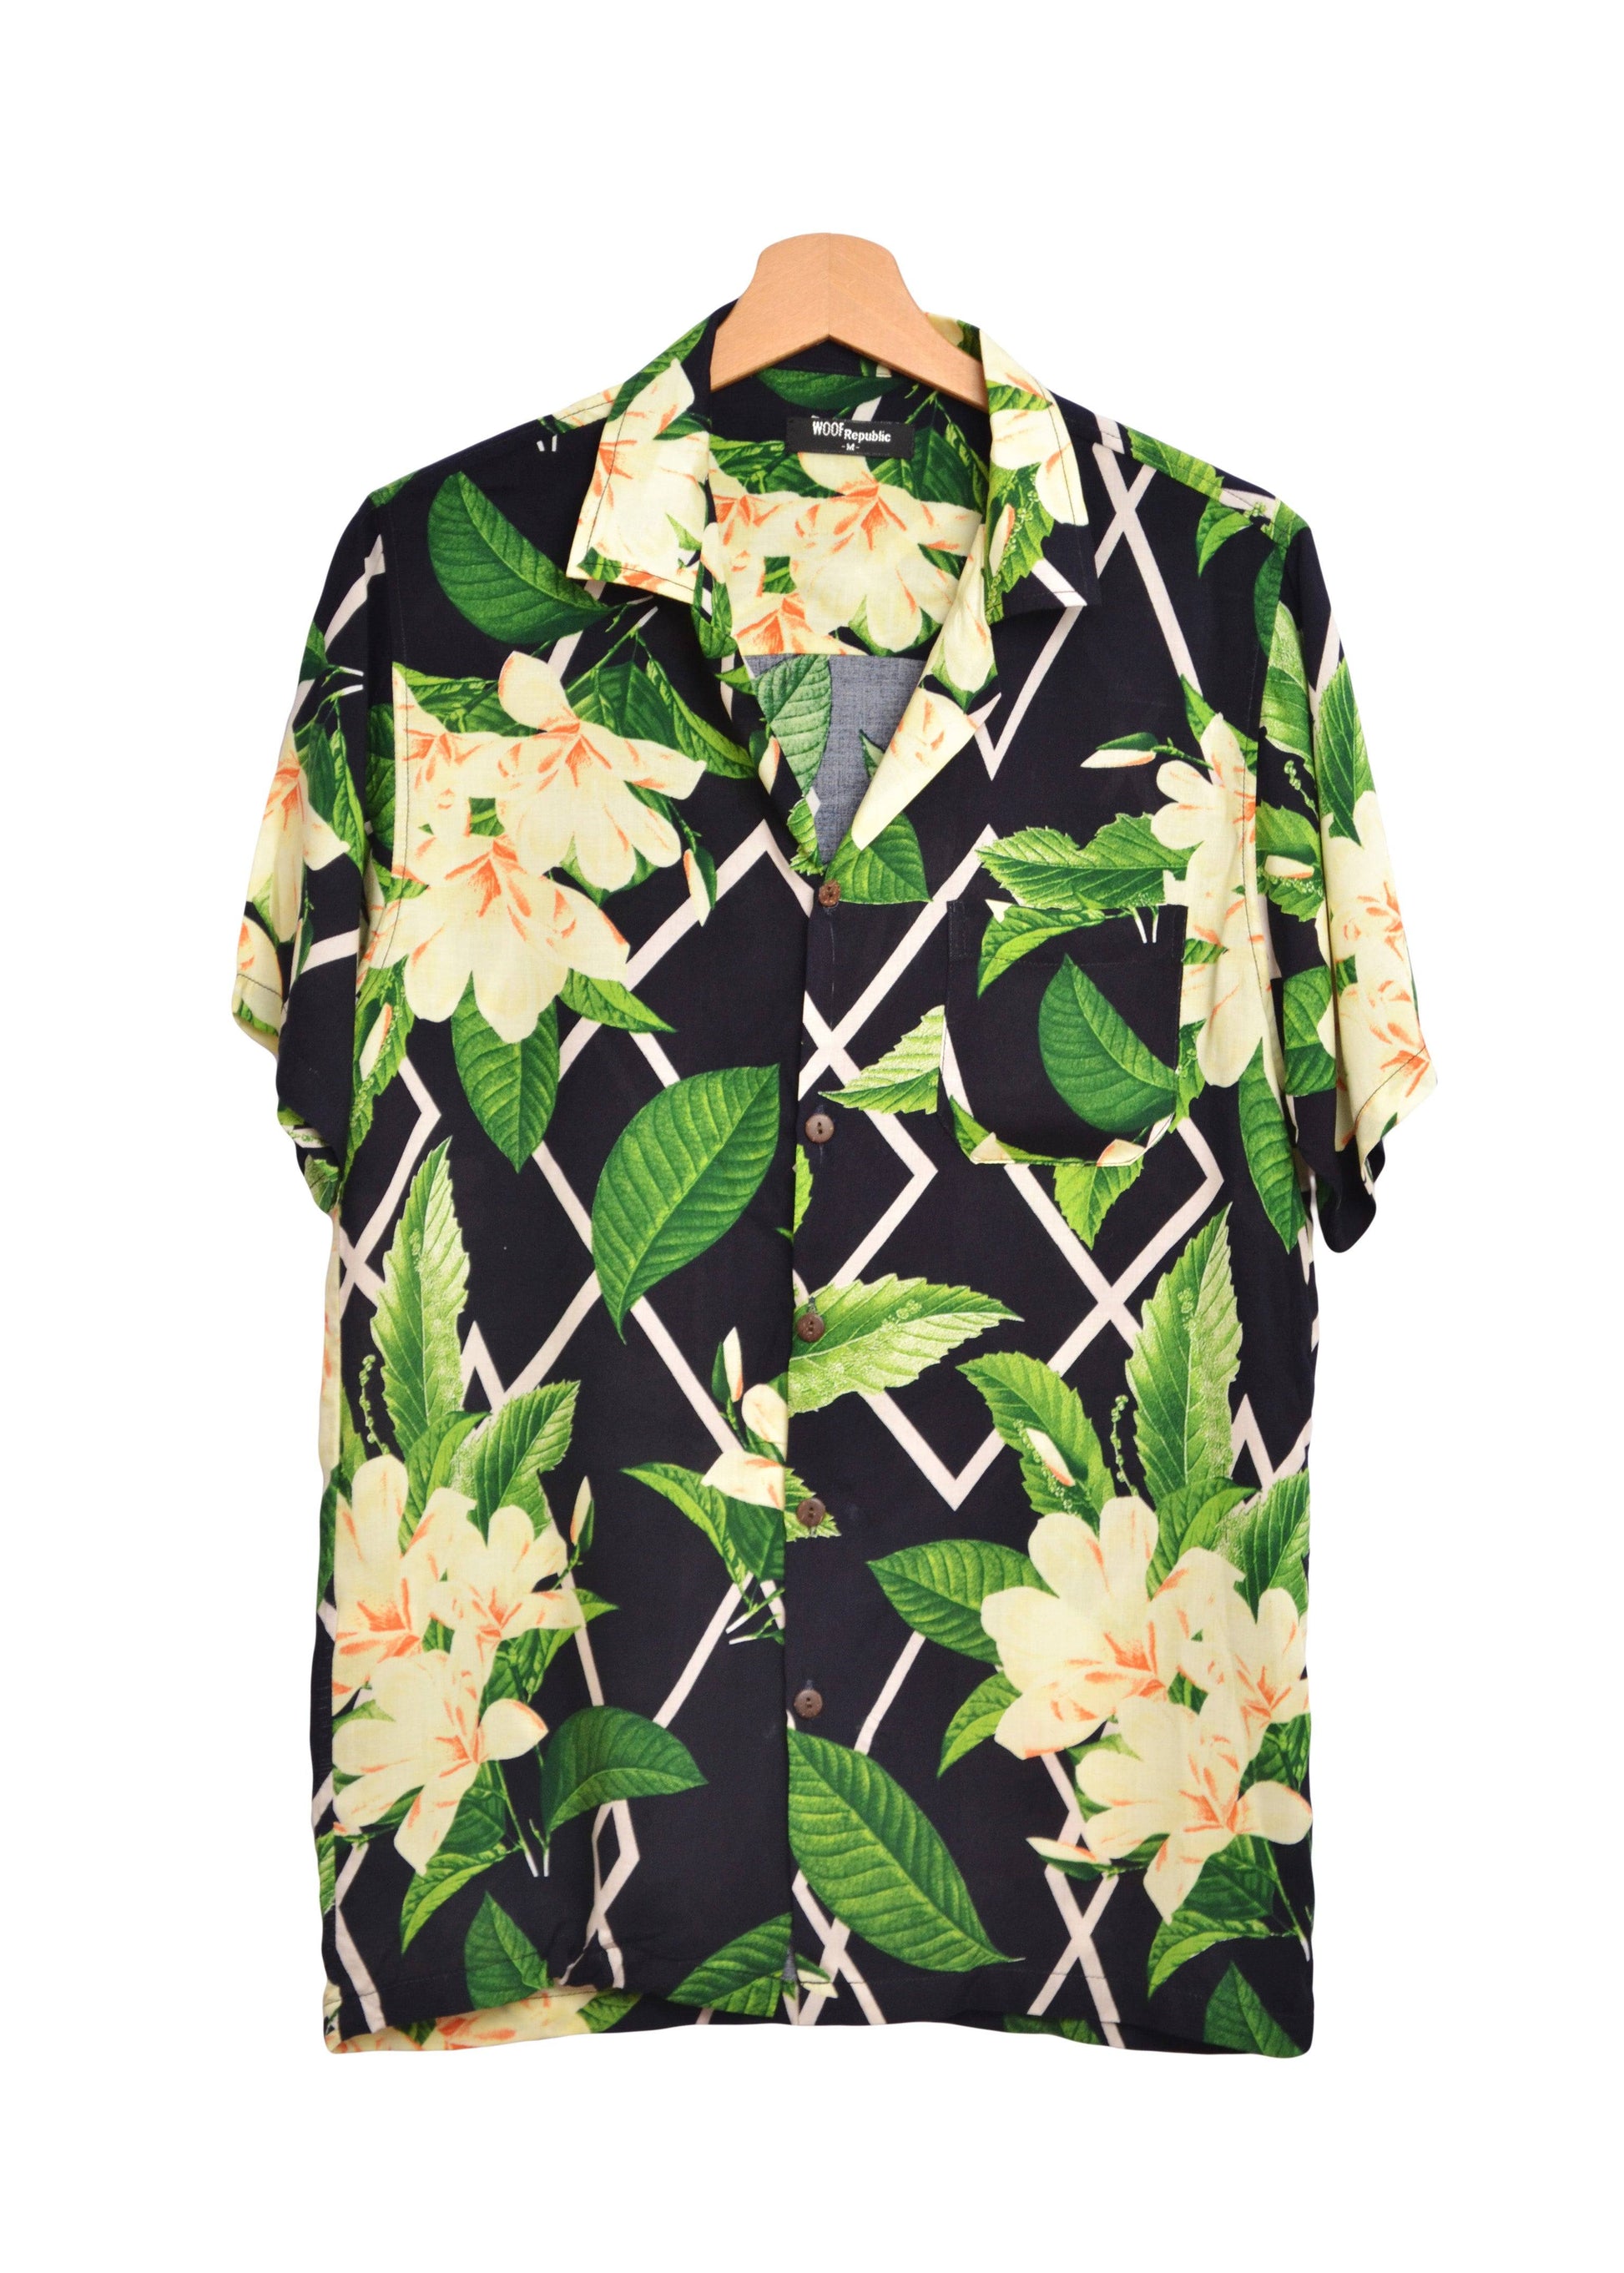 Chemise hawianne pour homme noire avec imprimé floral blanc et vert - GL BOUTIK